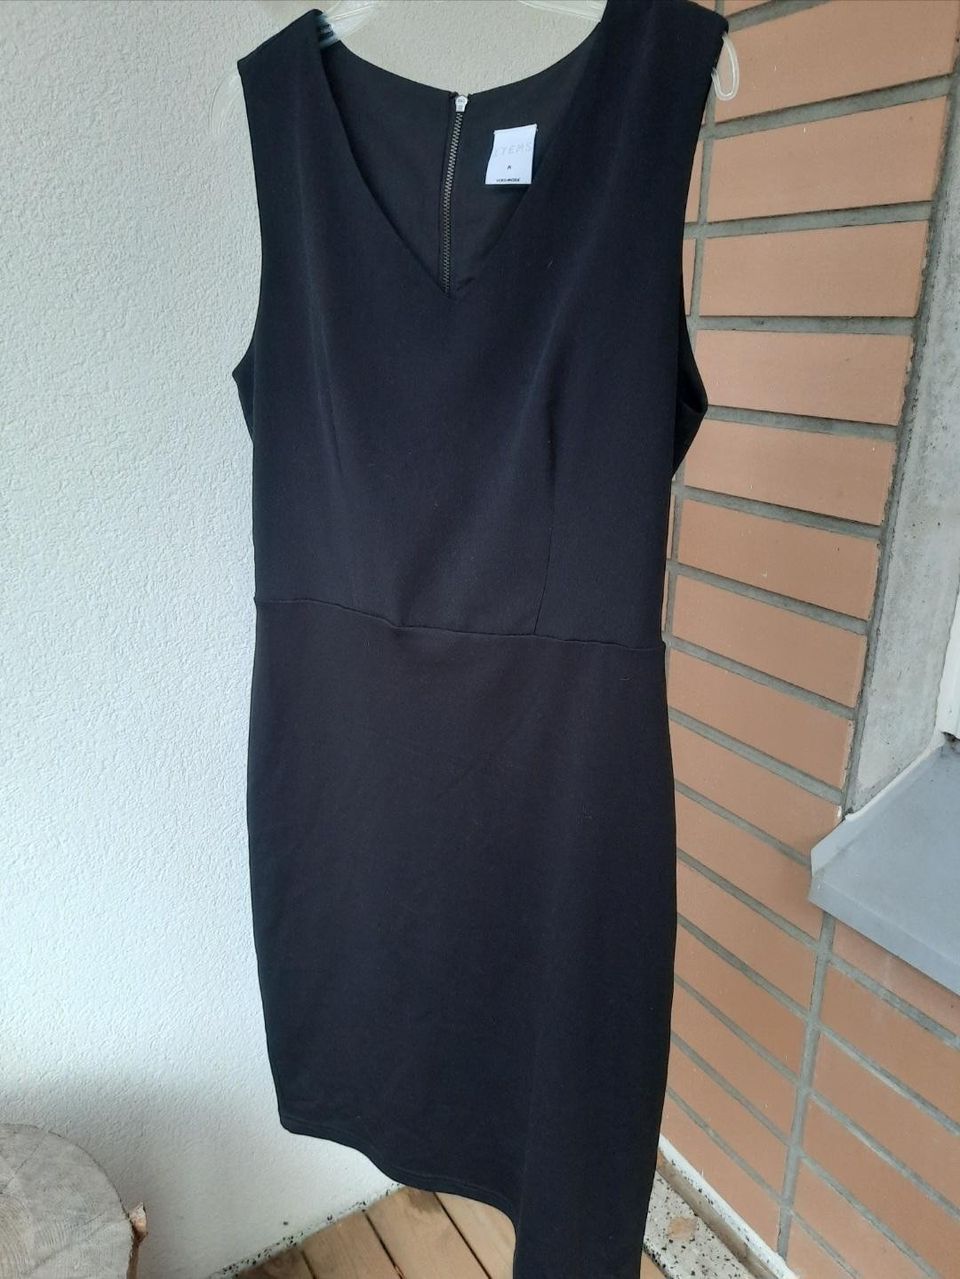 ITEMS Vero Moda musta nätti mekko. M